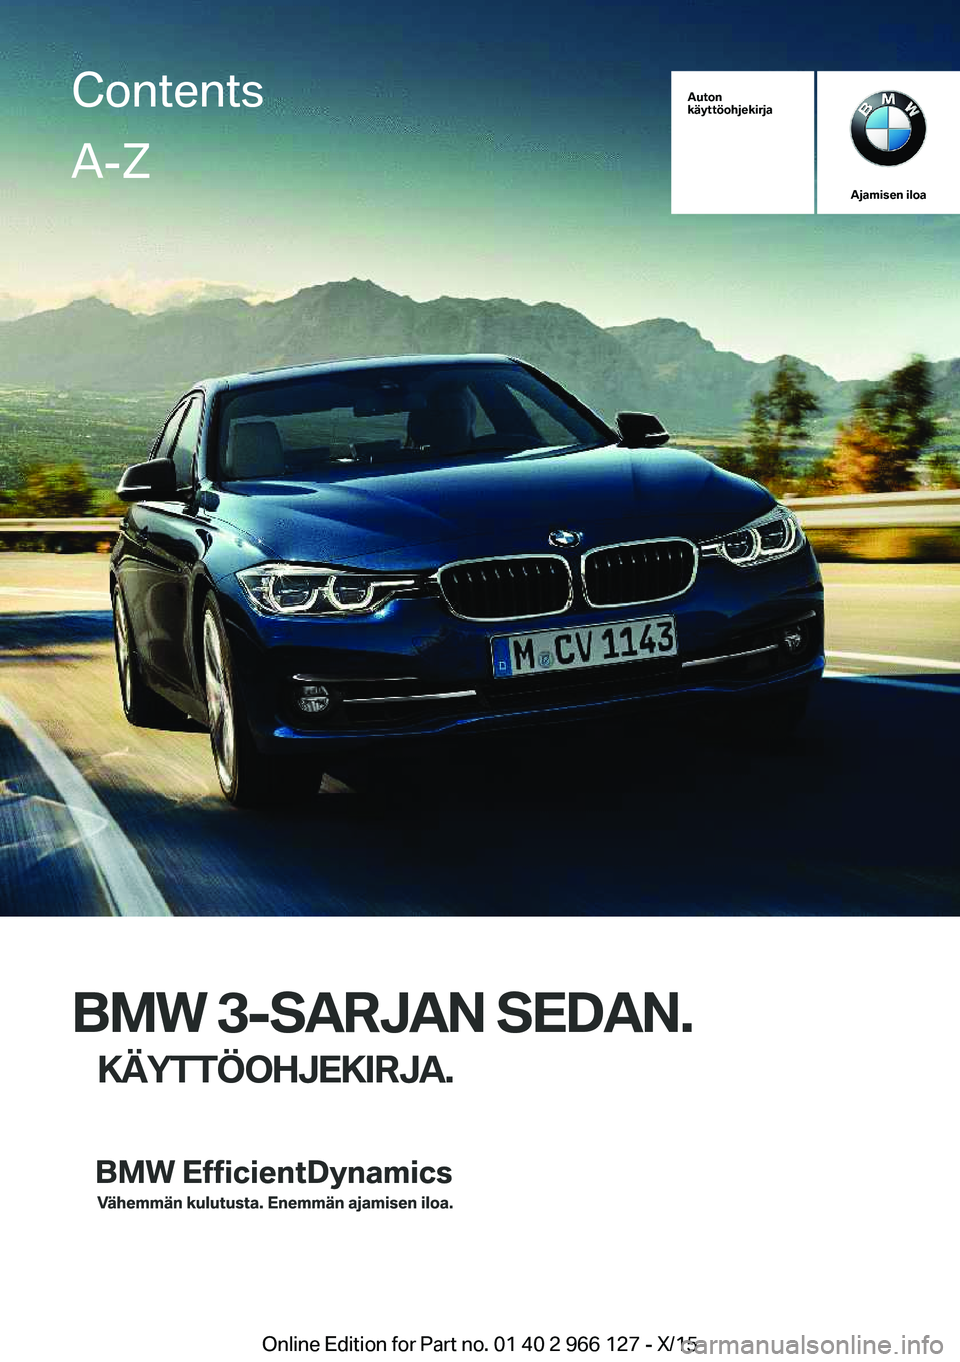 BMW 3 SERIES 2016  Omistajan Käsikirja (in Finnish) Auton
käyttöohjekirja
Ajamisen iloa
BMW 3-SARJAN SEDAN.
KÄYTTÖOHJEKIRJA.
ContentsA-Z
Online Edition for Part no. 01 40 2 966 127 - X/15   